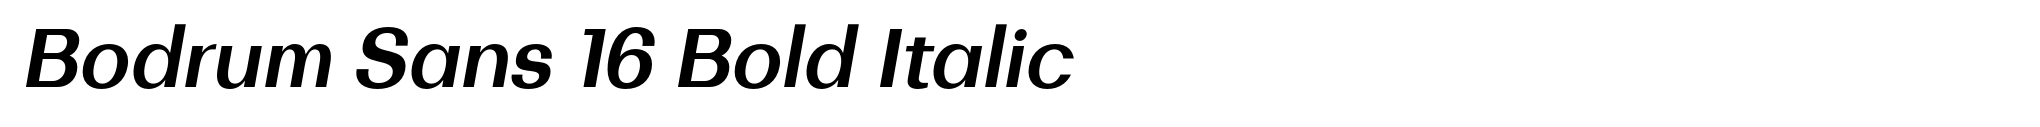 Bodrum Sans 16 Bold Italic image